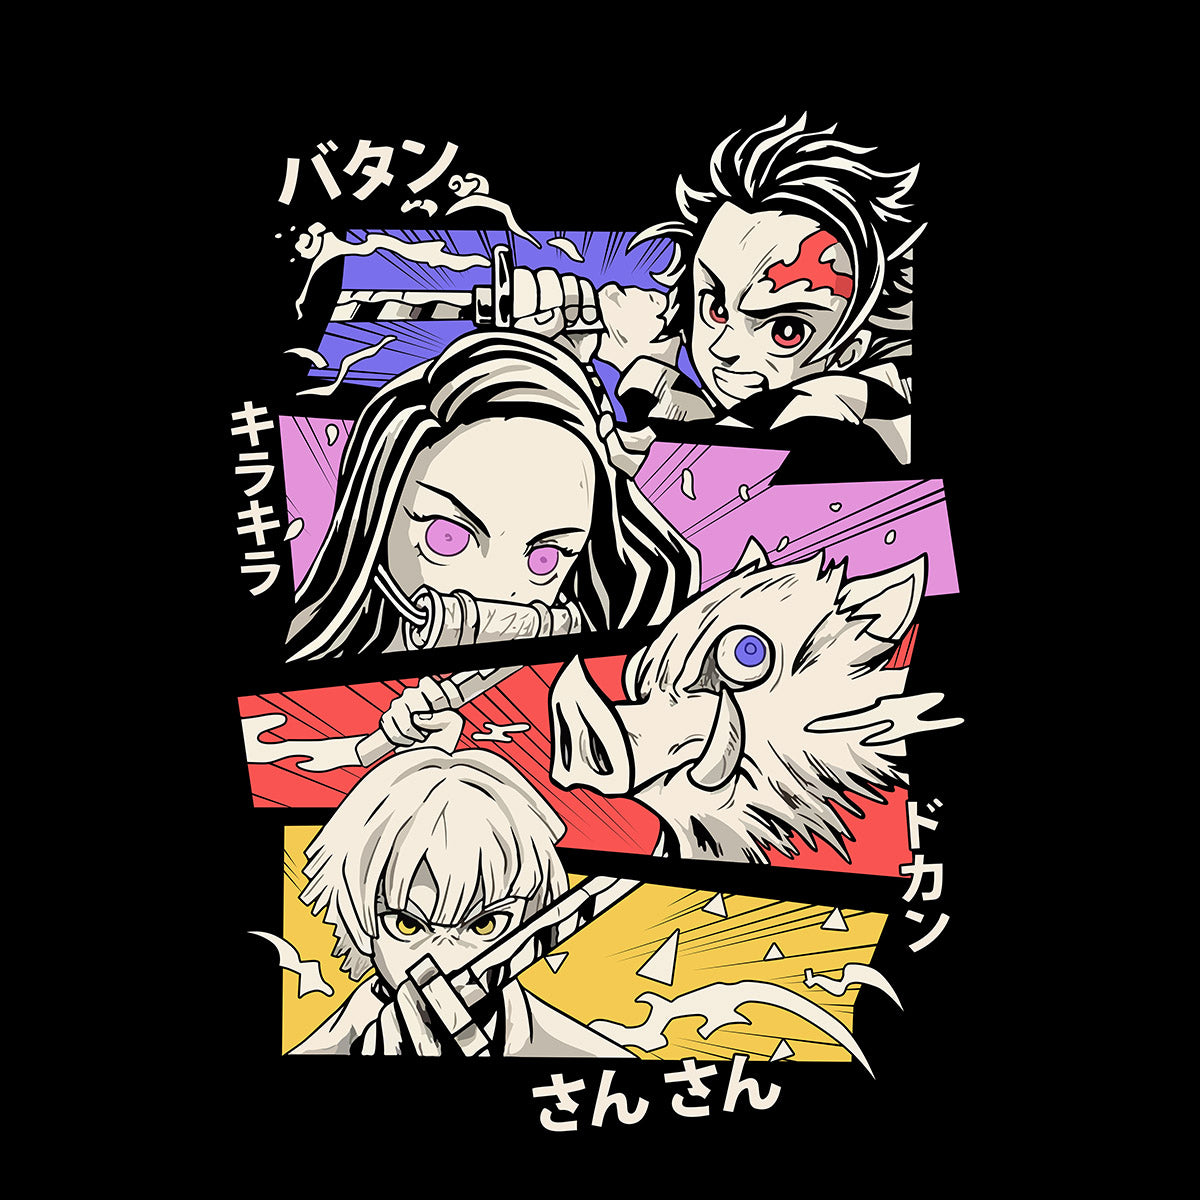 Itachi Uchiha Naruto Graphic Art Japanese Manga Anime Black T-shirt for Kids